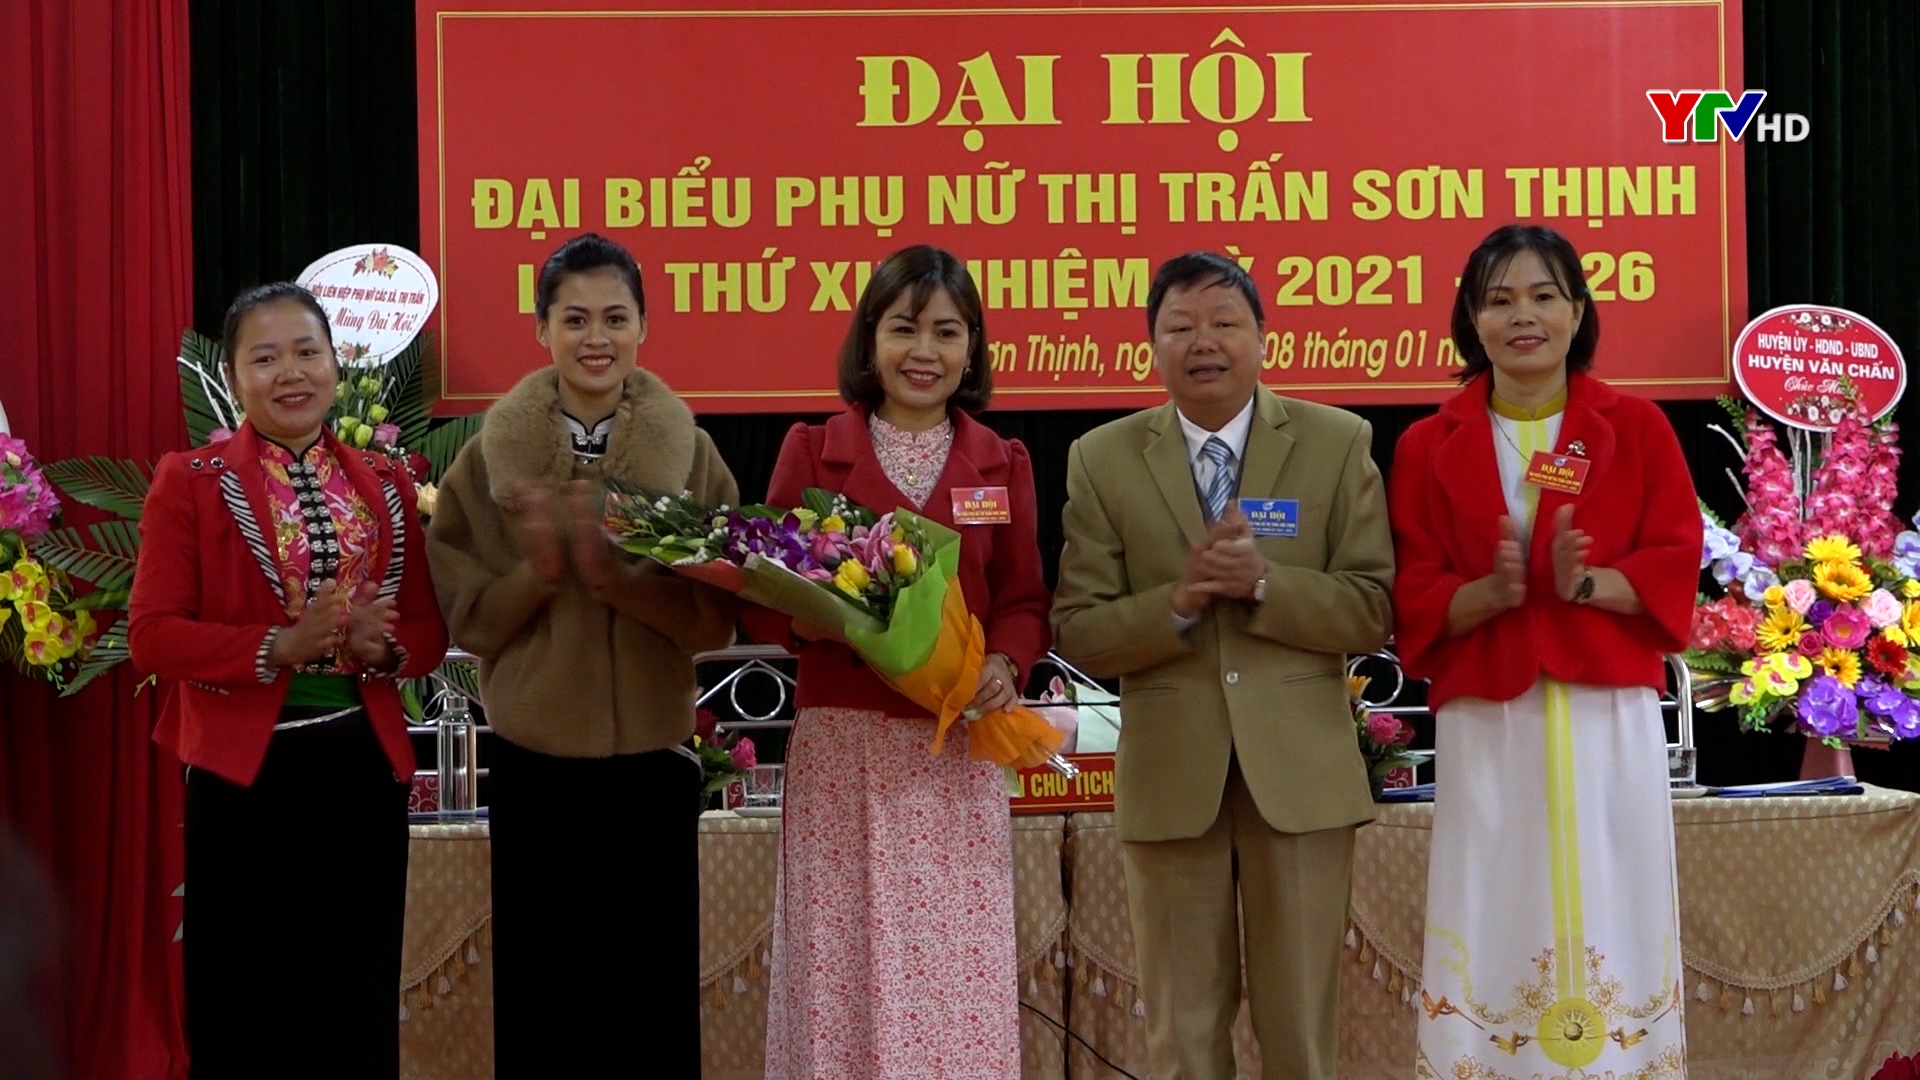 Hội Phụ nữ thị trấn Sơn Thịnh, huyện Văn Chấn tổ chức thành công Đại hội điểm, nhiệm kỳ 2021- 2026